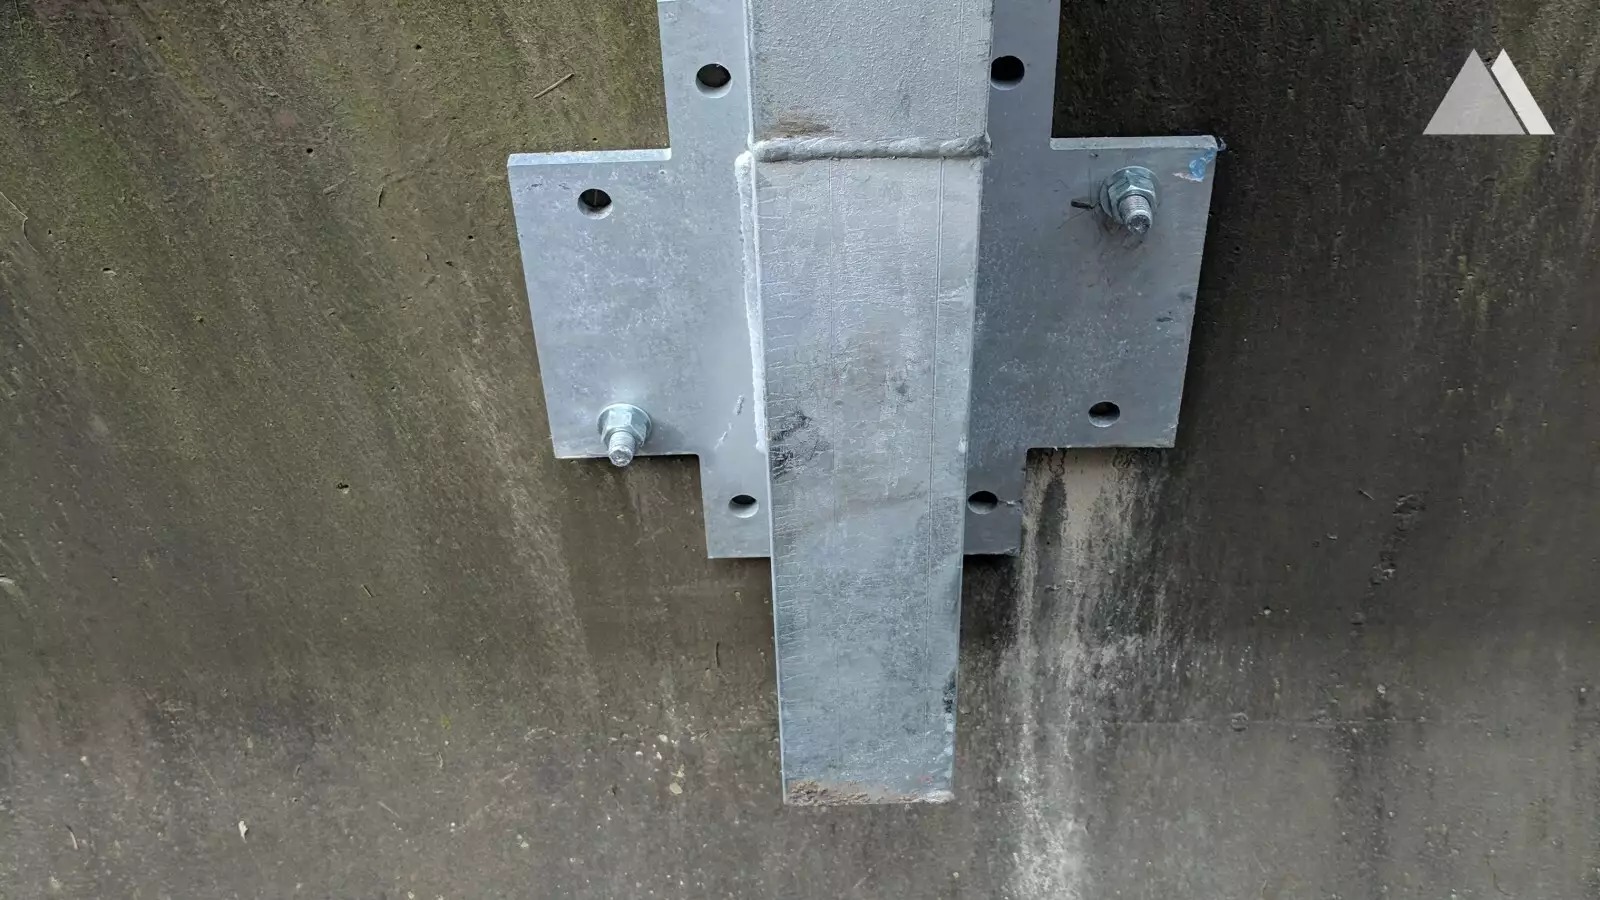 Protecţia împotriva căderilor de pietre - Moffet Creek, Oregon, T35 barrier on concrete guardrail 2018